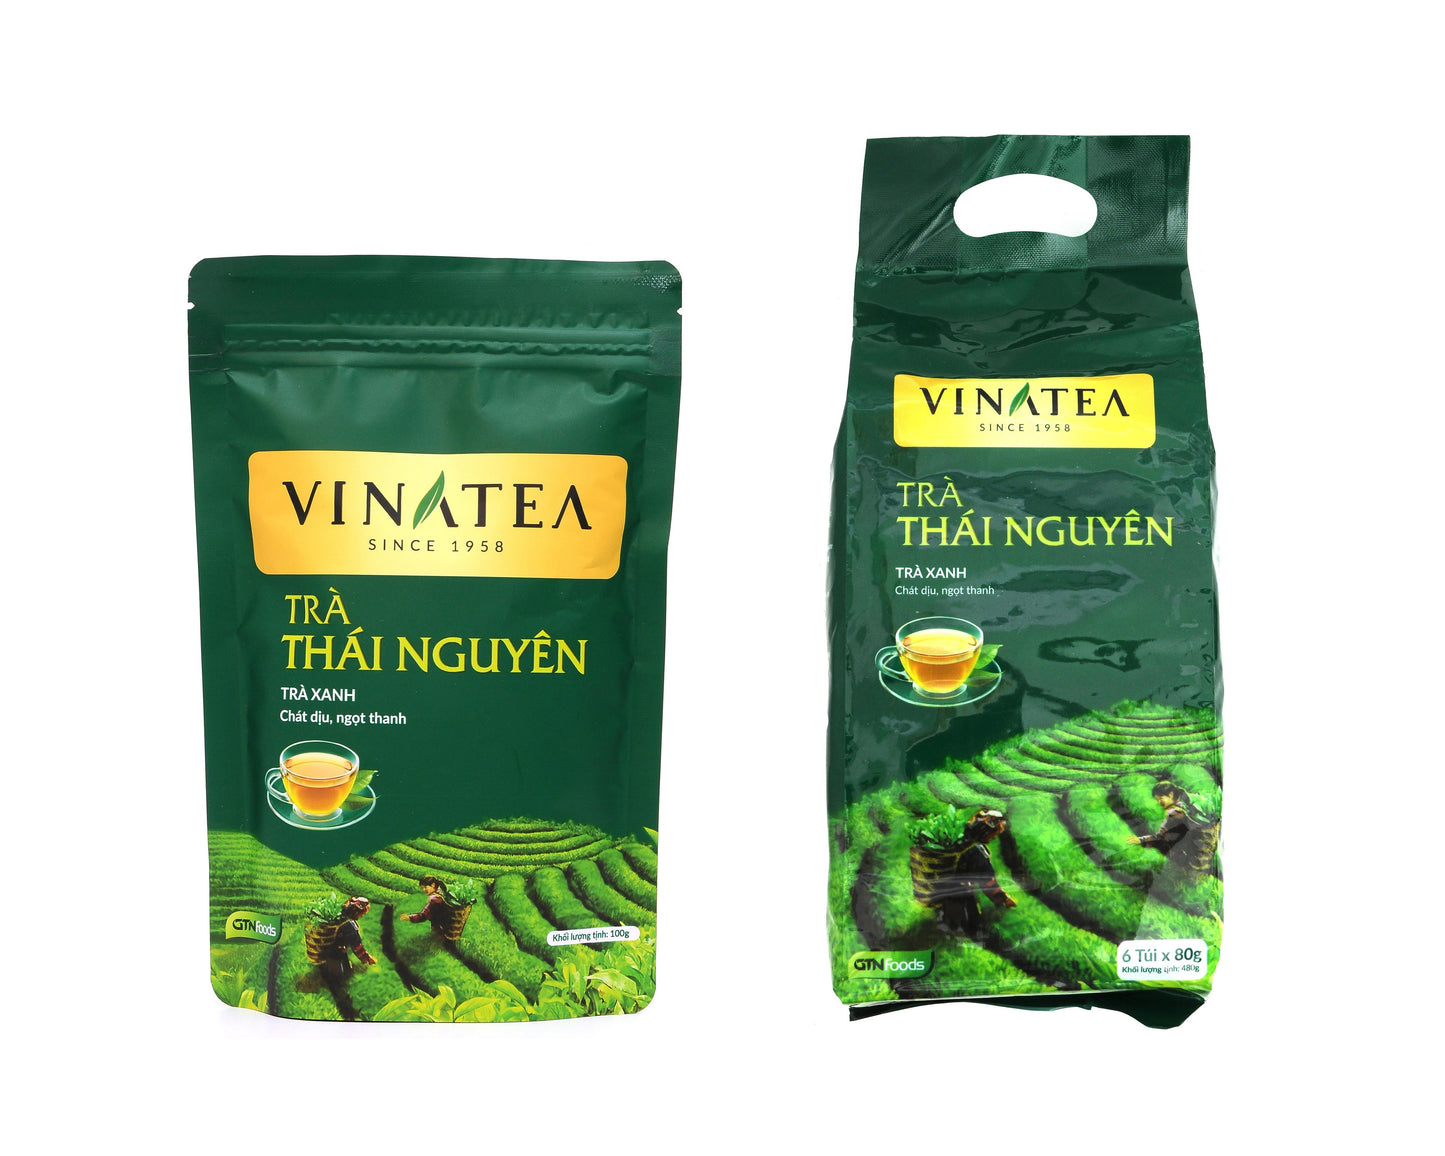 Vinatea Thai Nguyen Green Tea – One Of The Best Tea In Vietnam